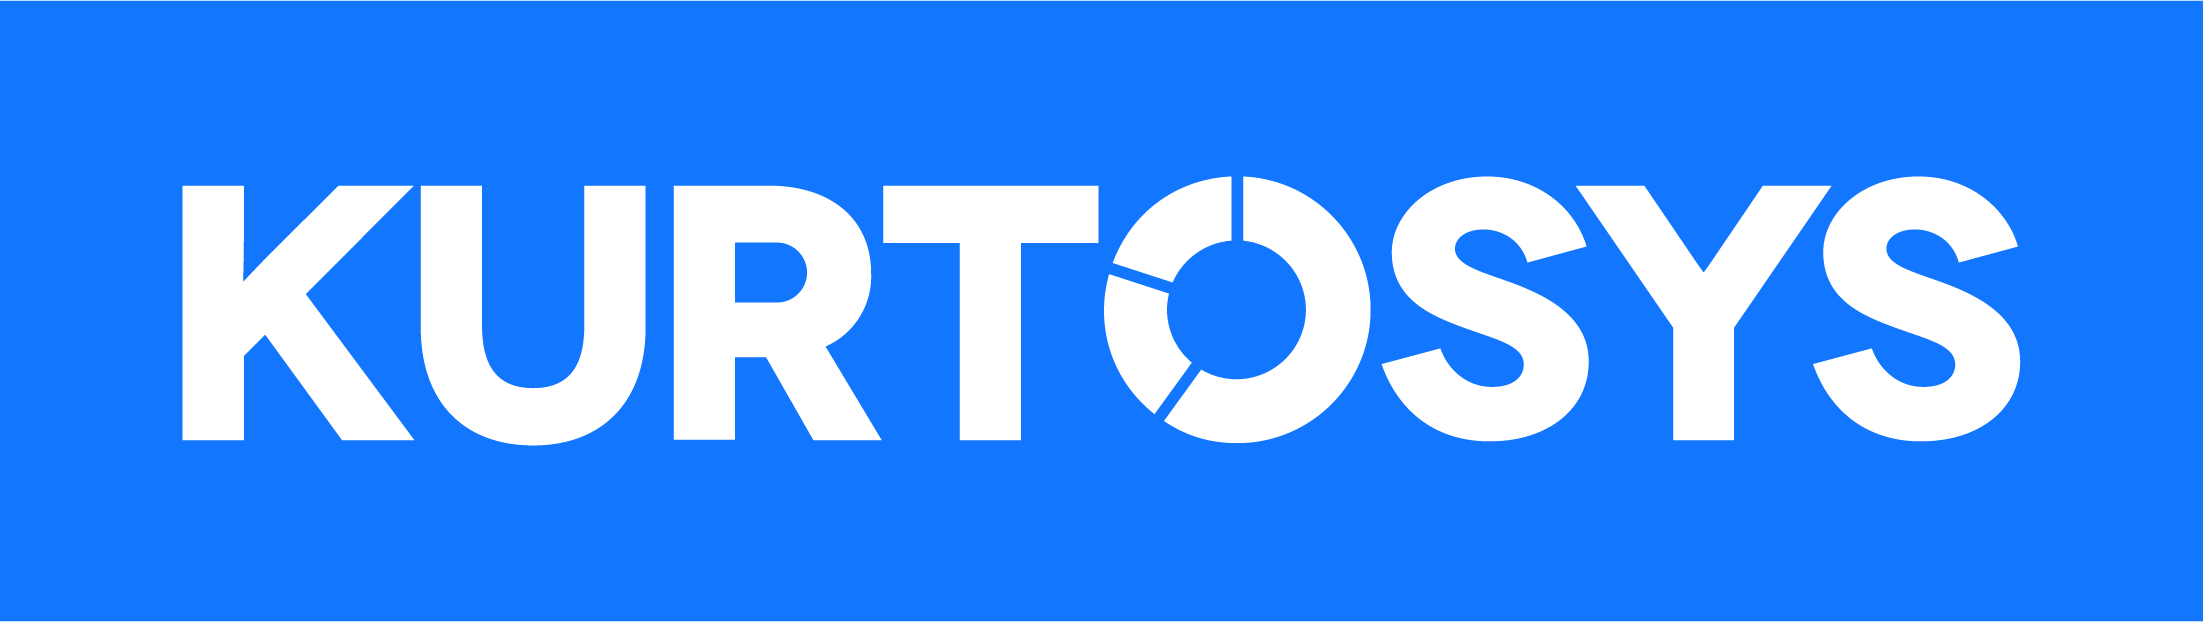 Kurtosys jobs logo